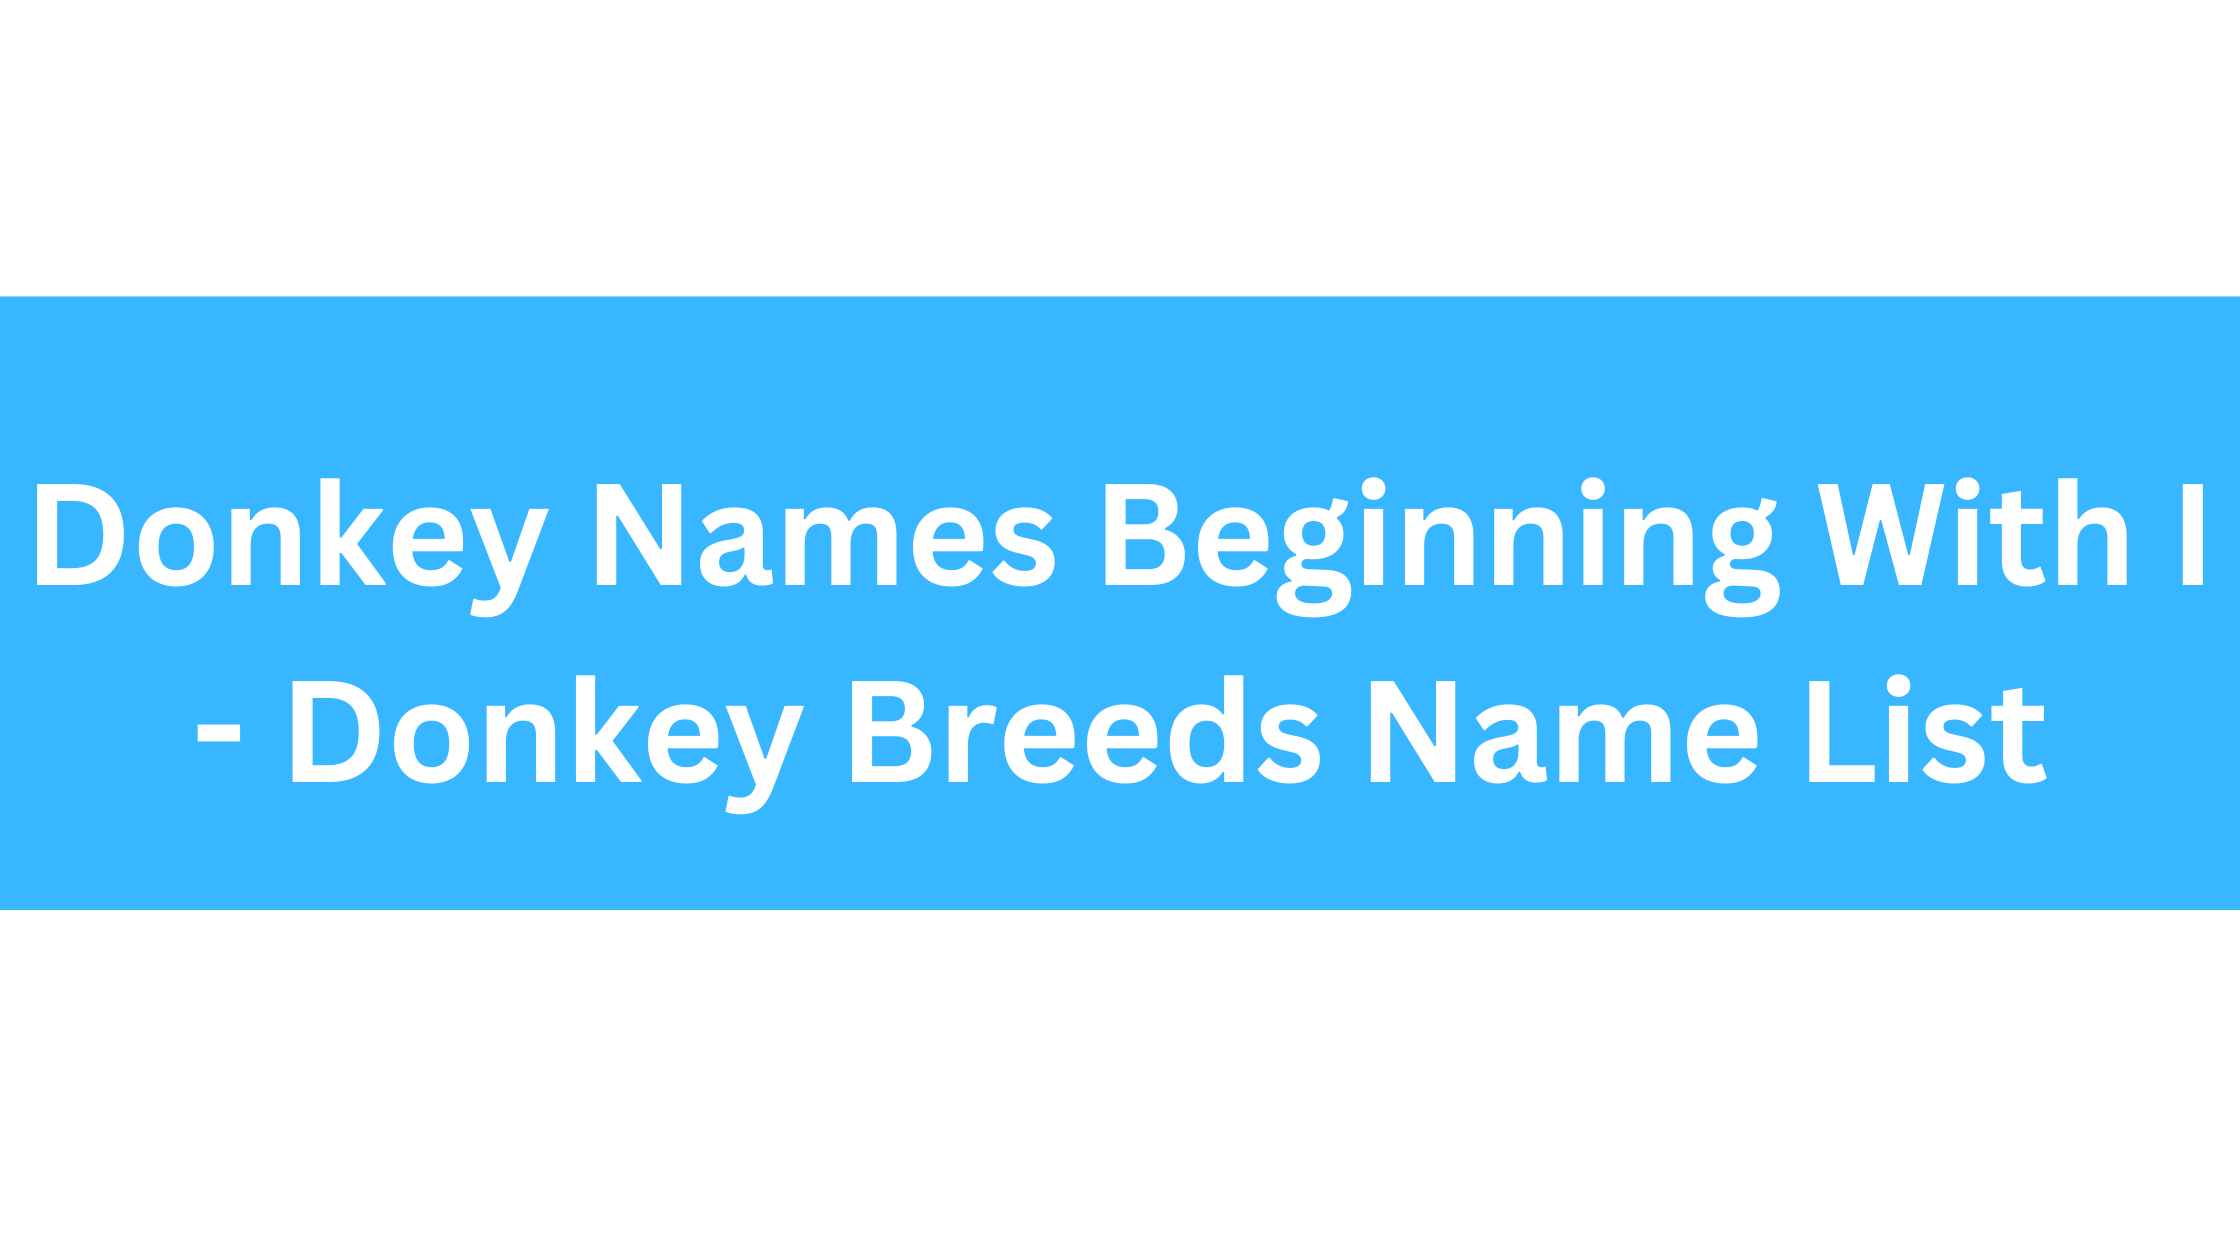 Donkey Names Beginning With I